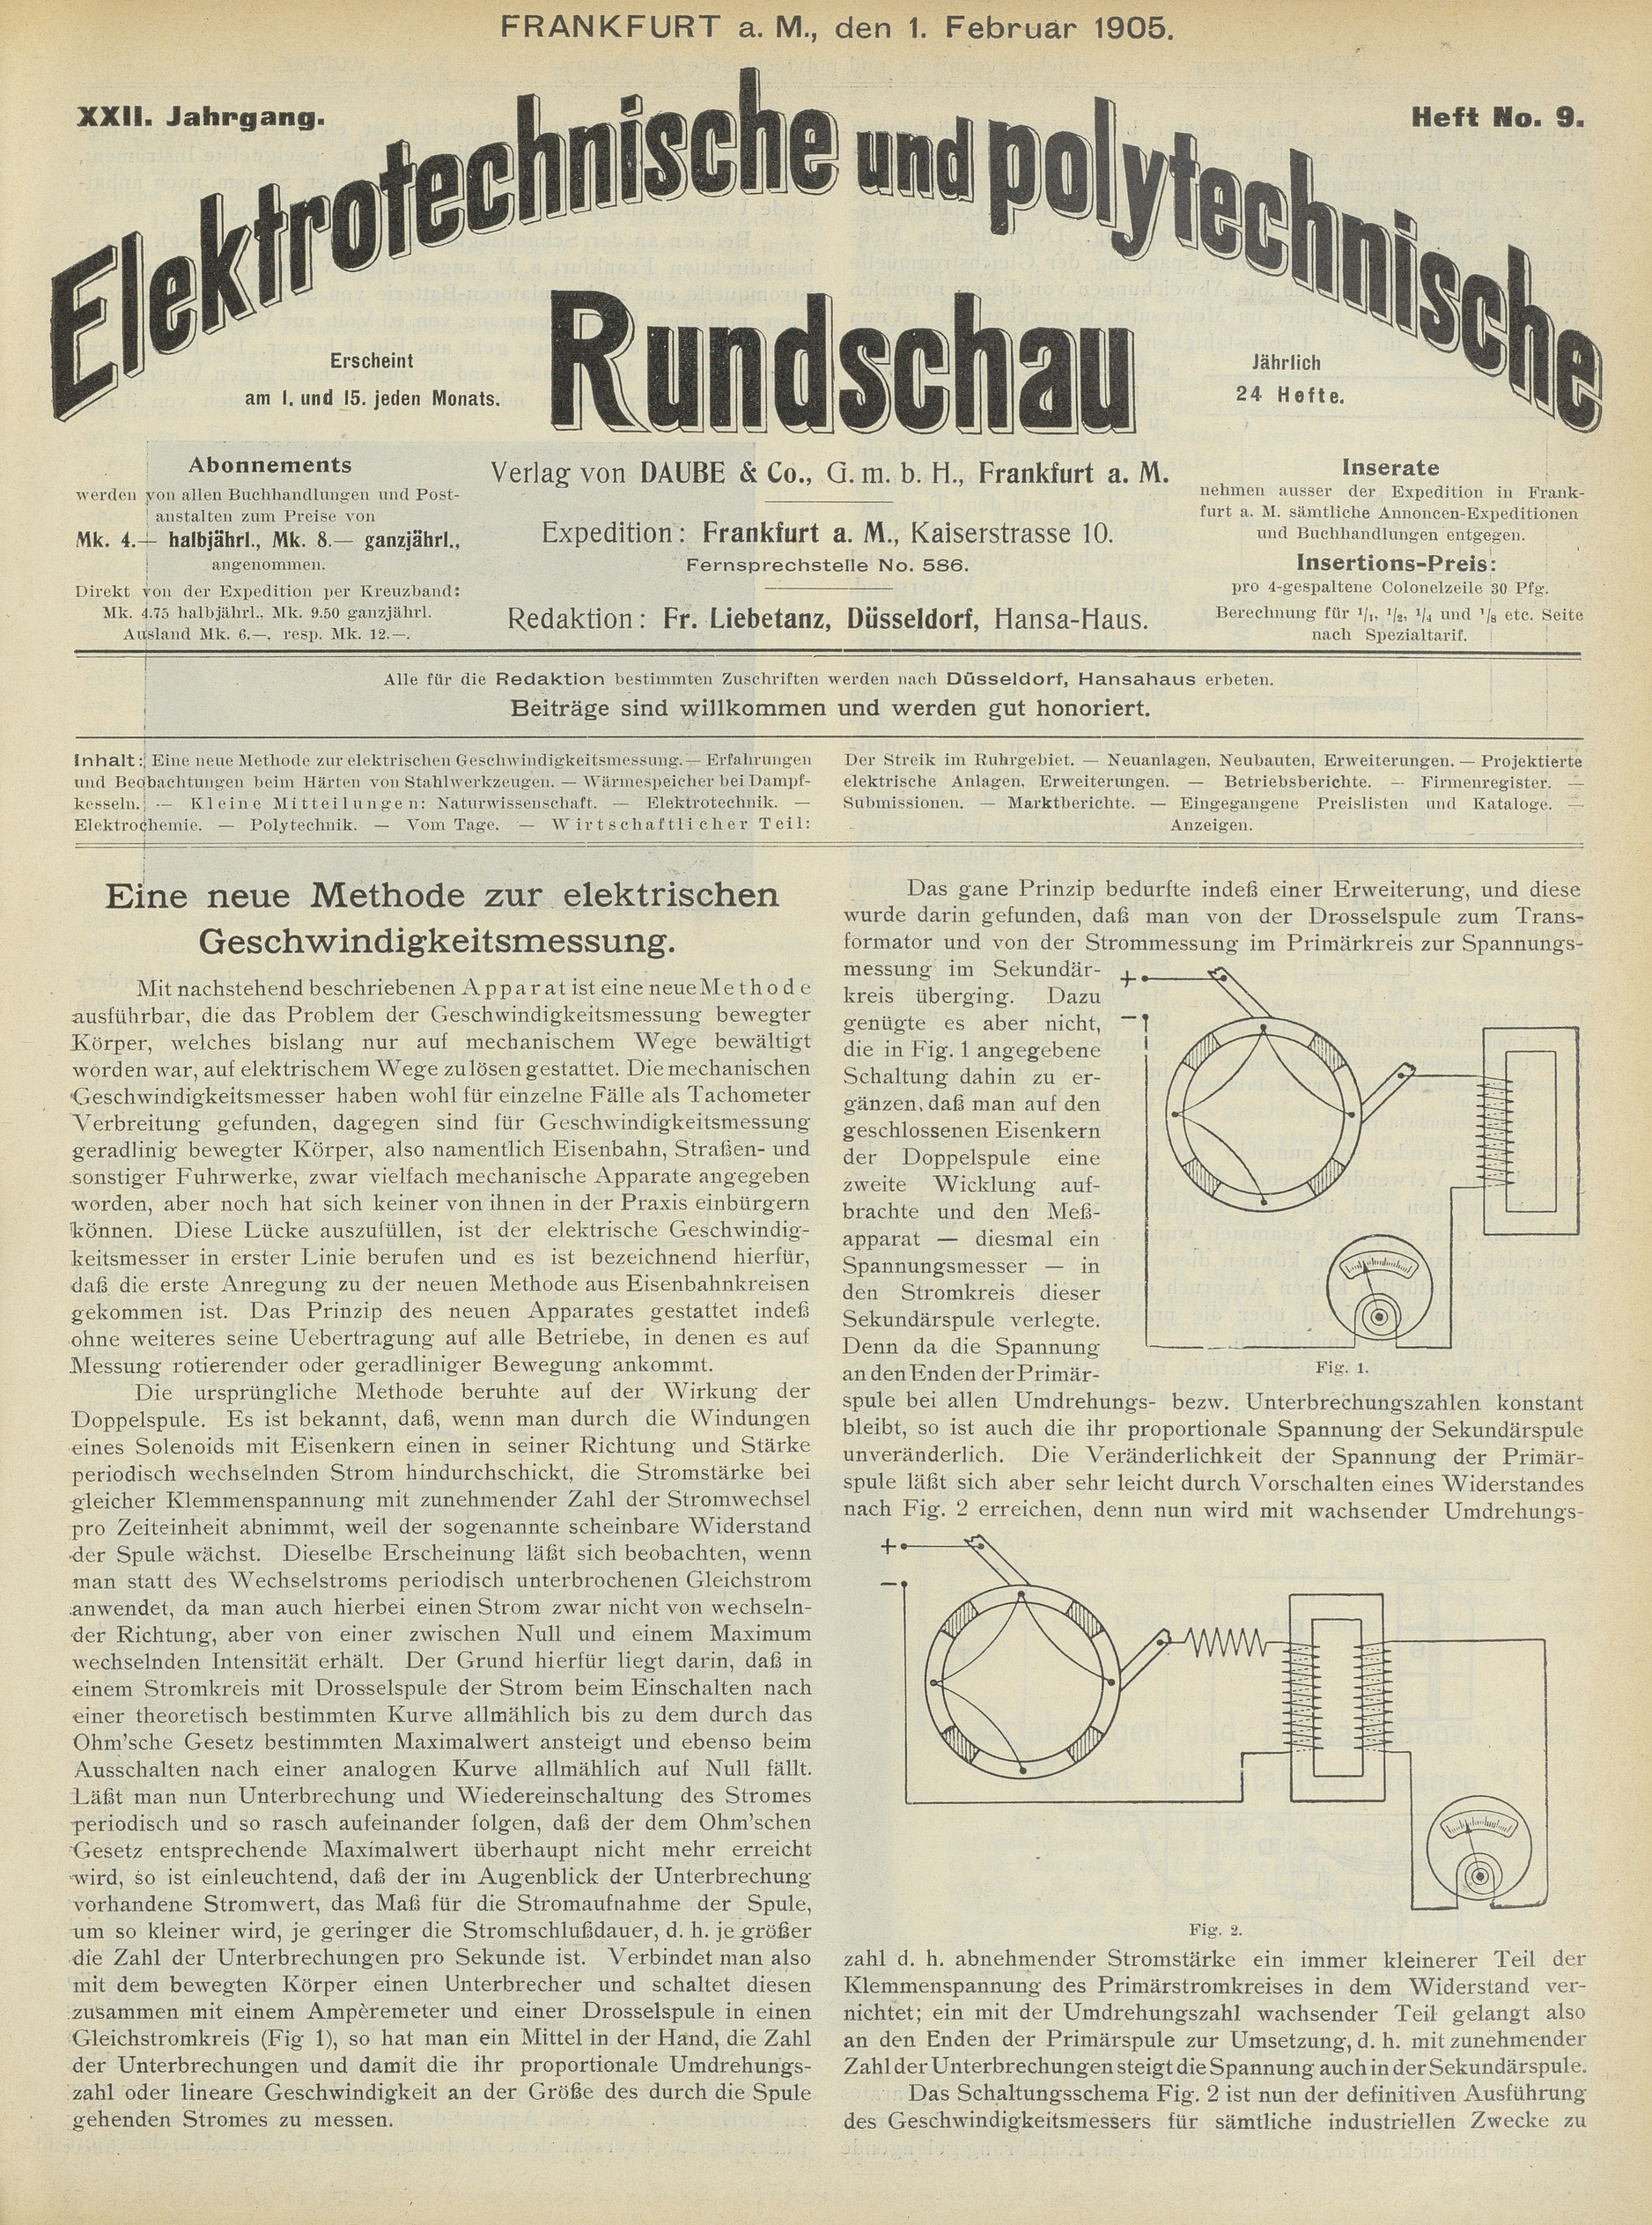 Elektrotechnische und polytechnische Rundschau, XXII. Jahrgang, Heft No. 9